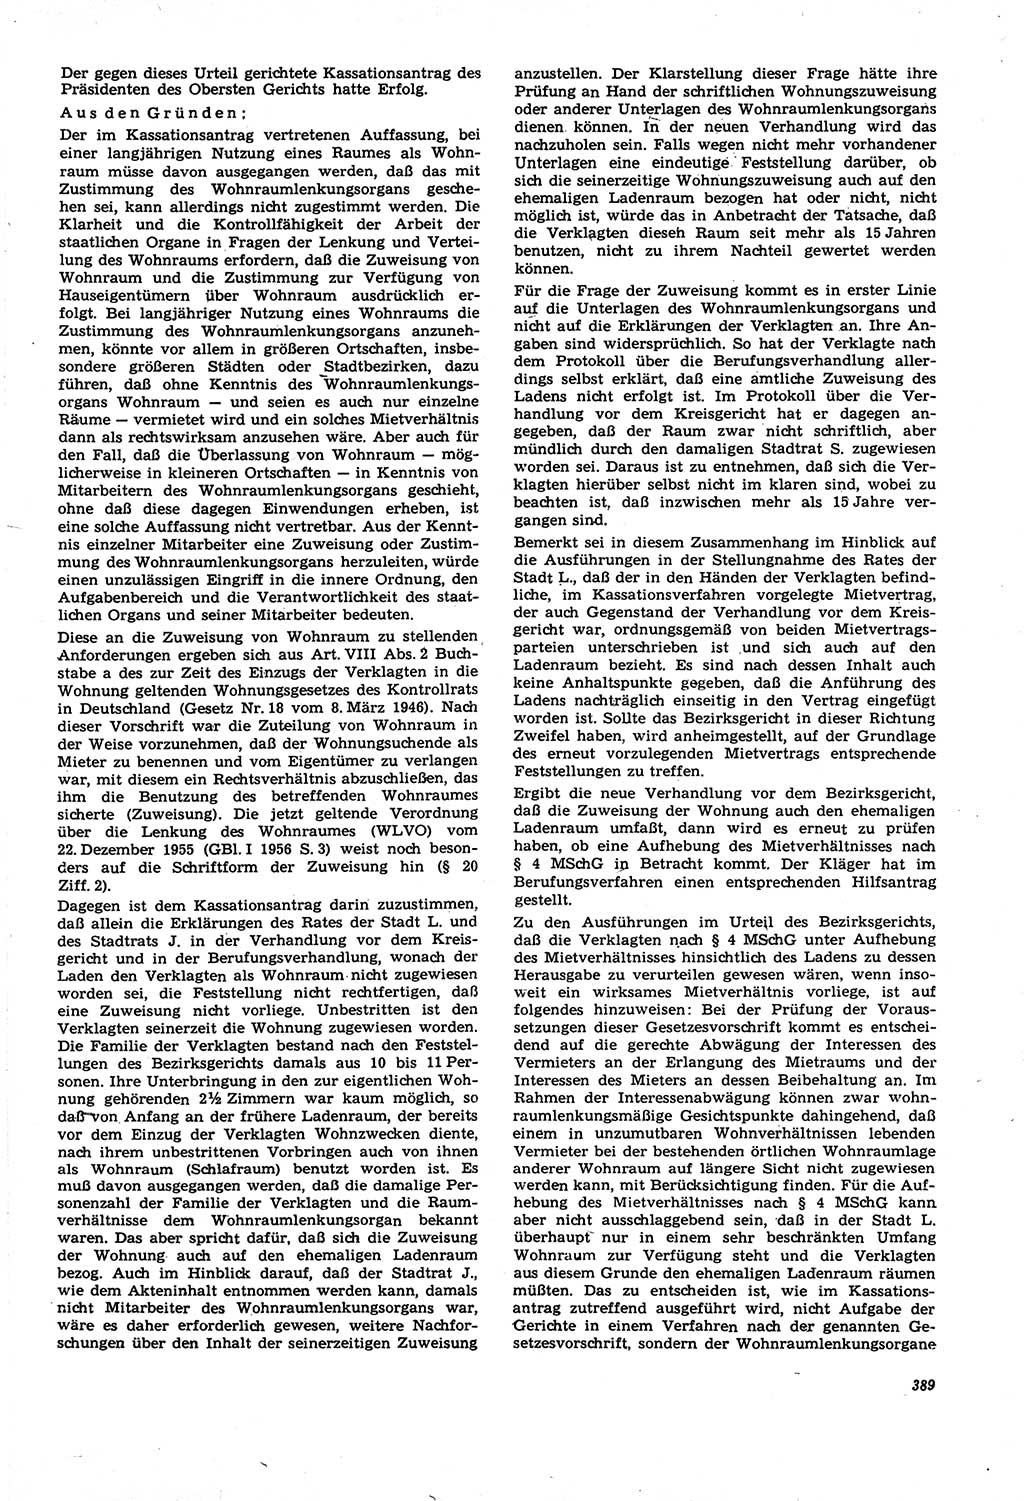 Neue Justiz (NJ), Zeitschrift für Recht und Rechtswissenschaft [Deutsche Demokratische Republik (DDR)], 21. Jahrgang 1967, Seite 389 (NJ DDR 1967, S. 389)